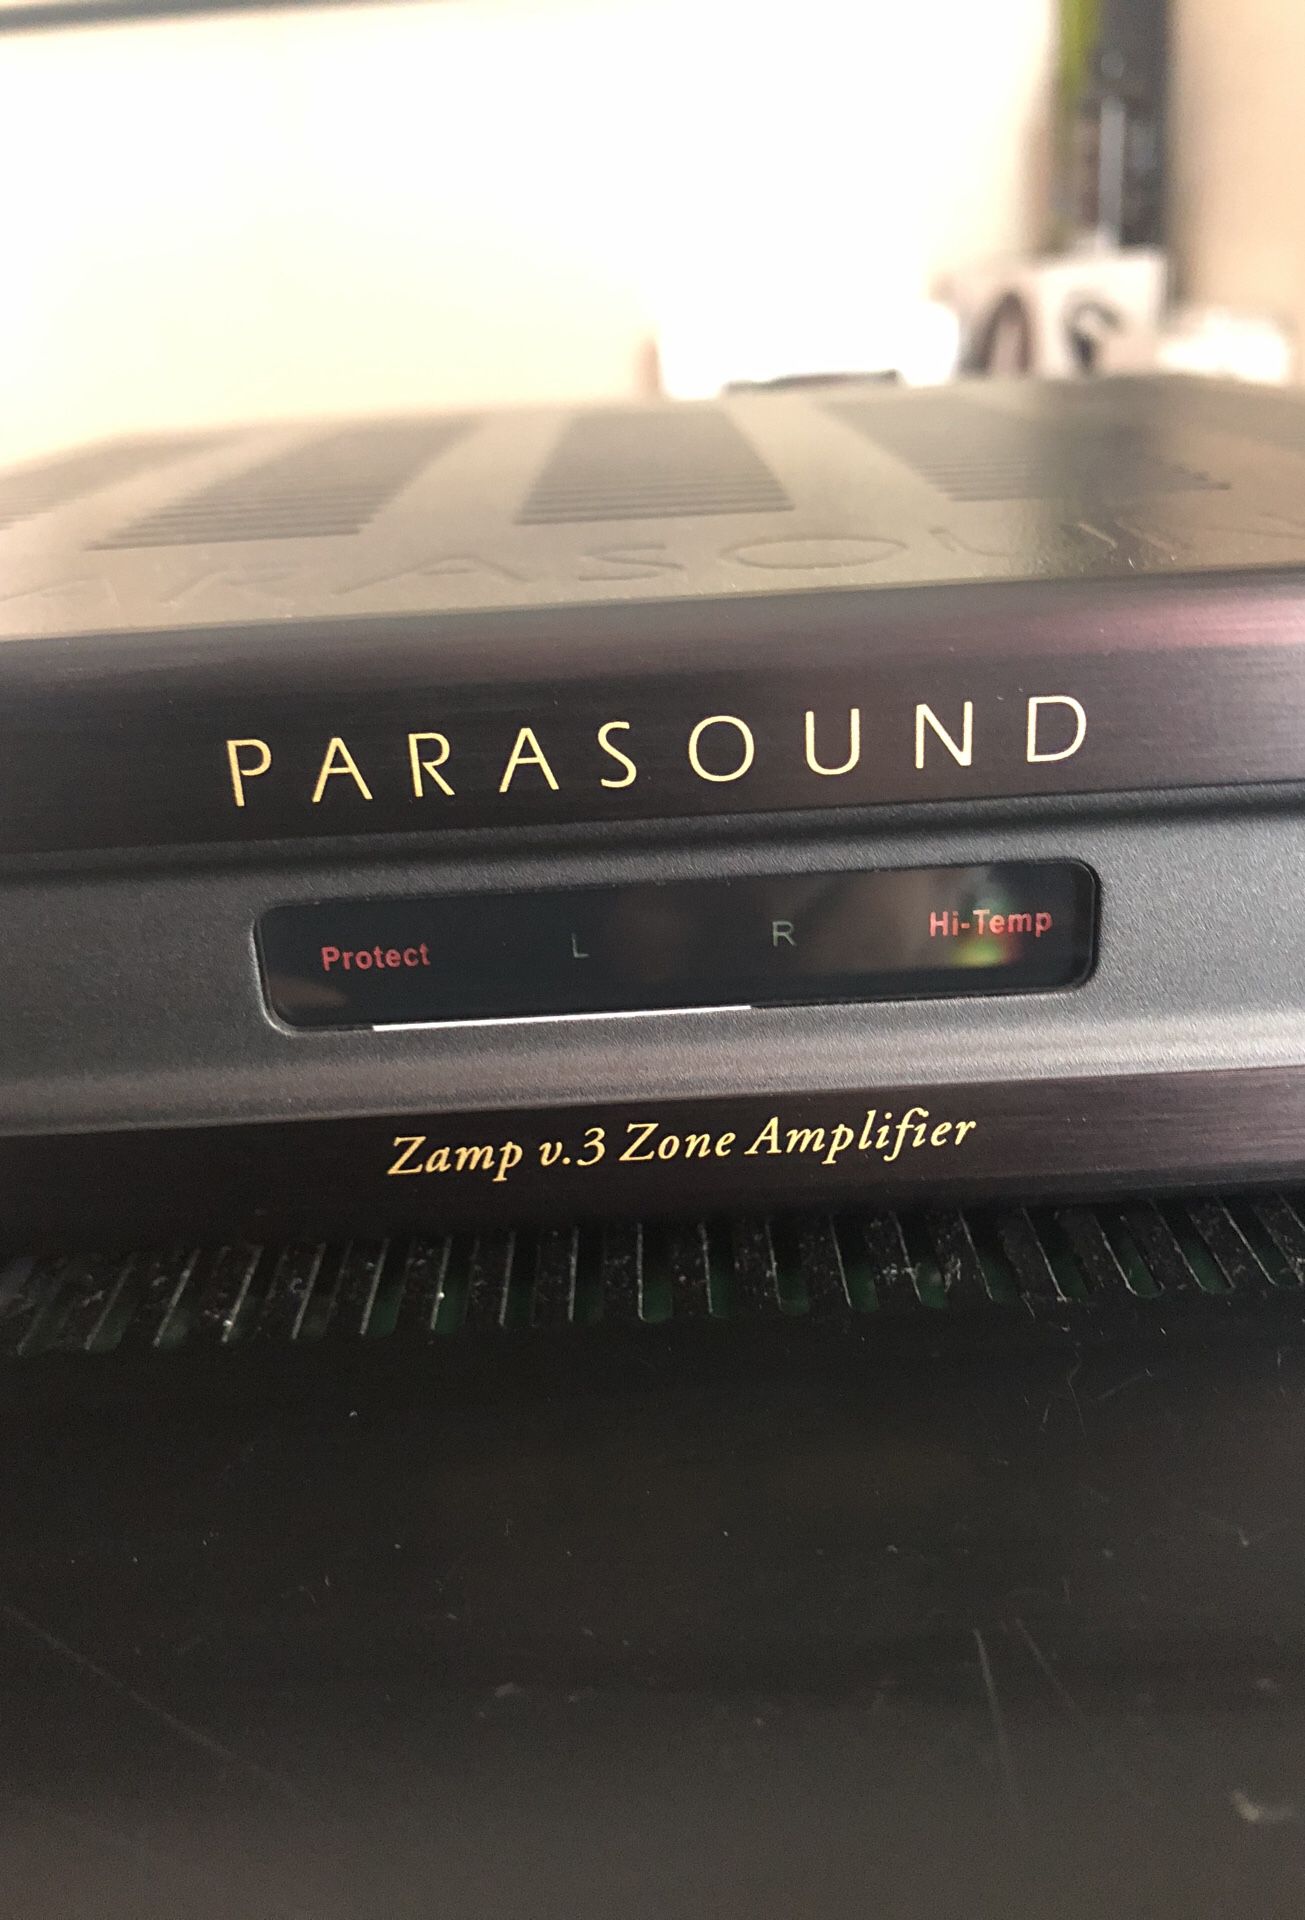 Parasound zamp v.3 zone amplifier!